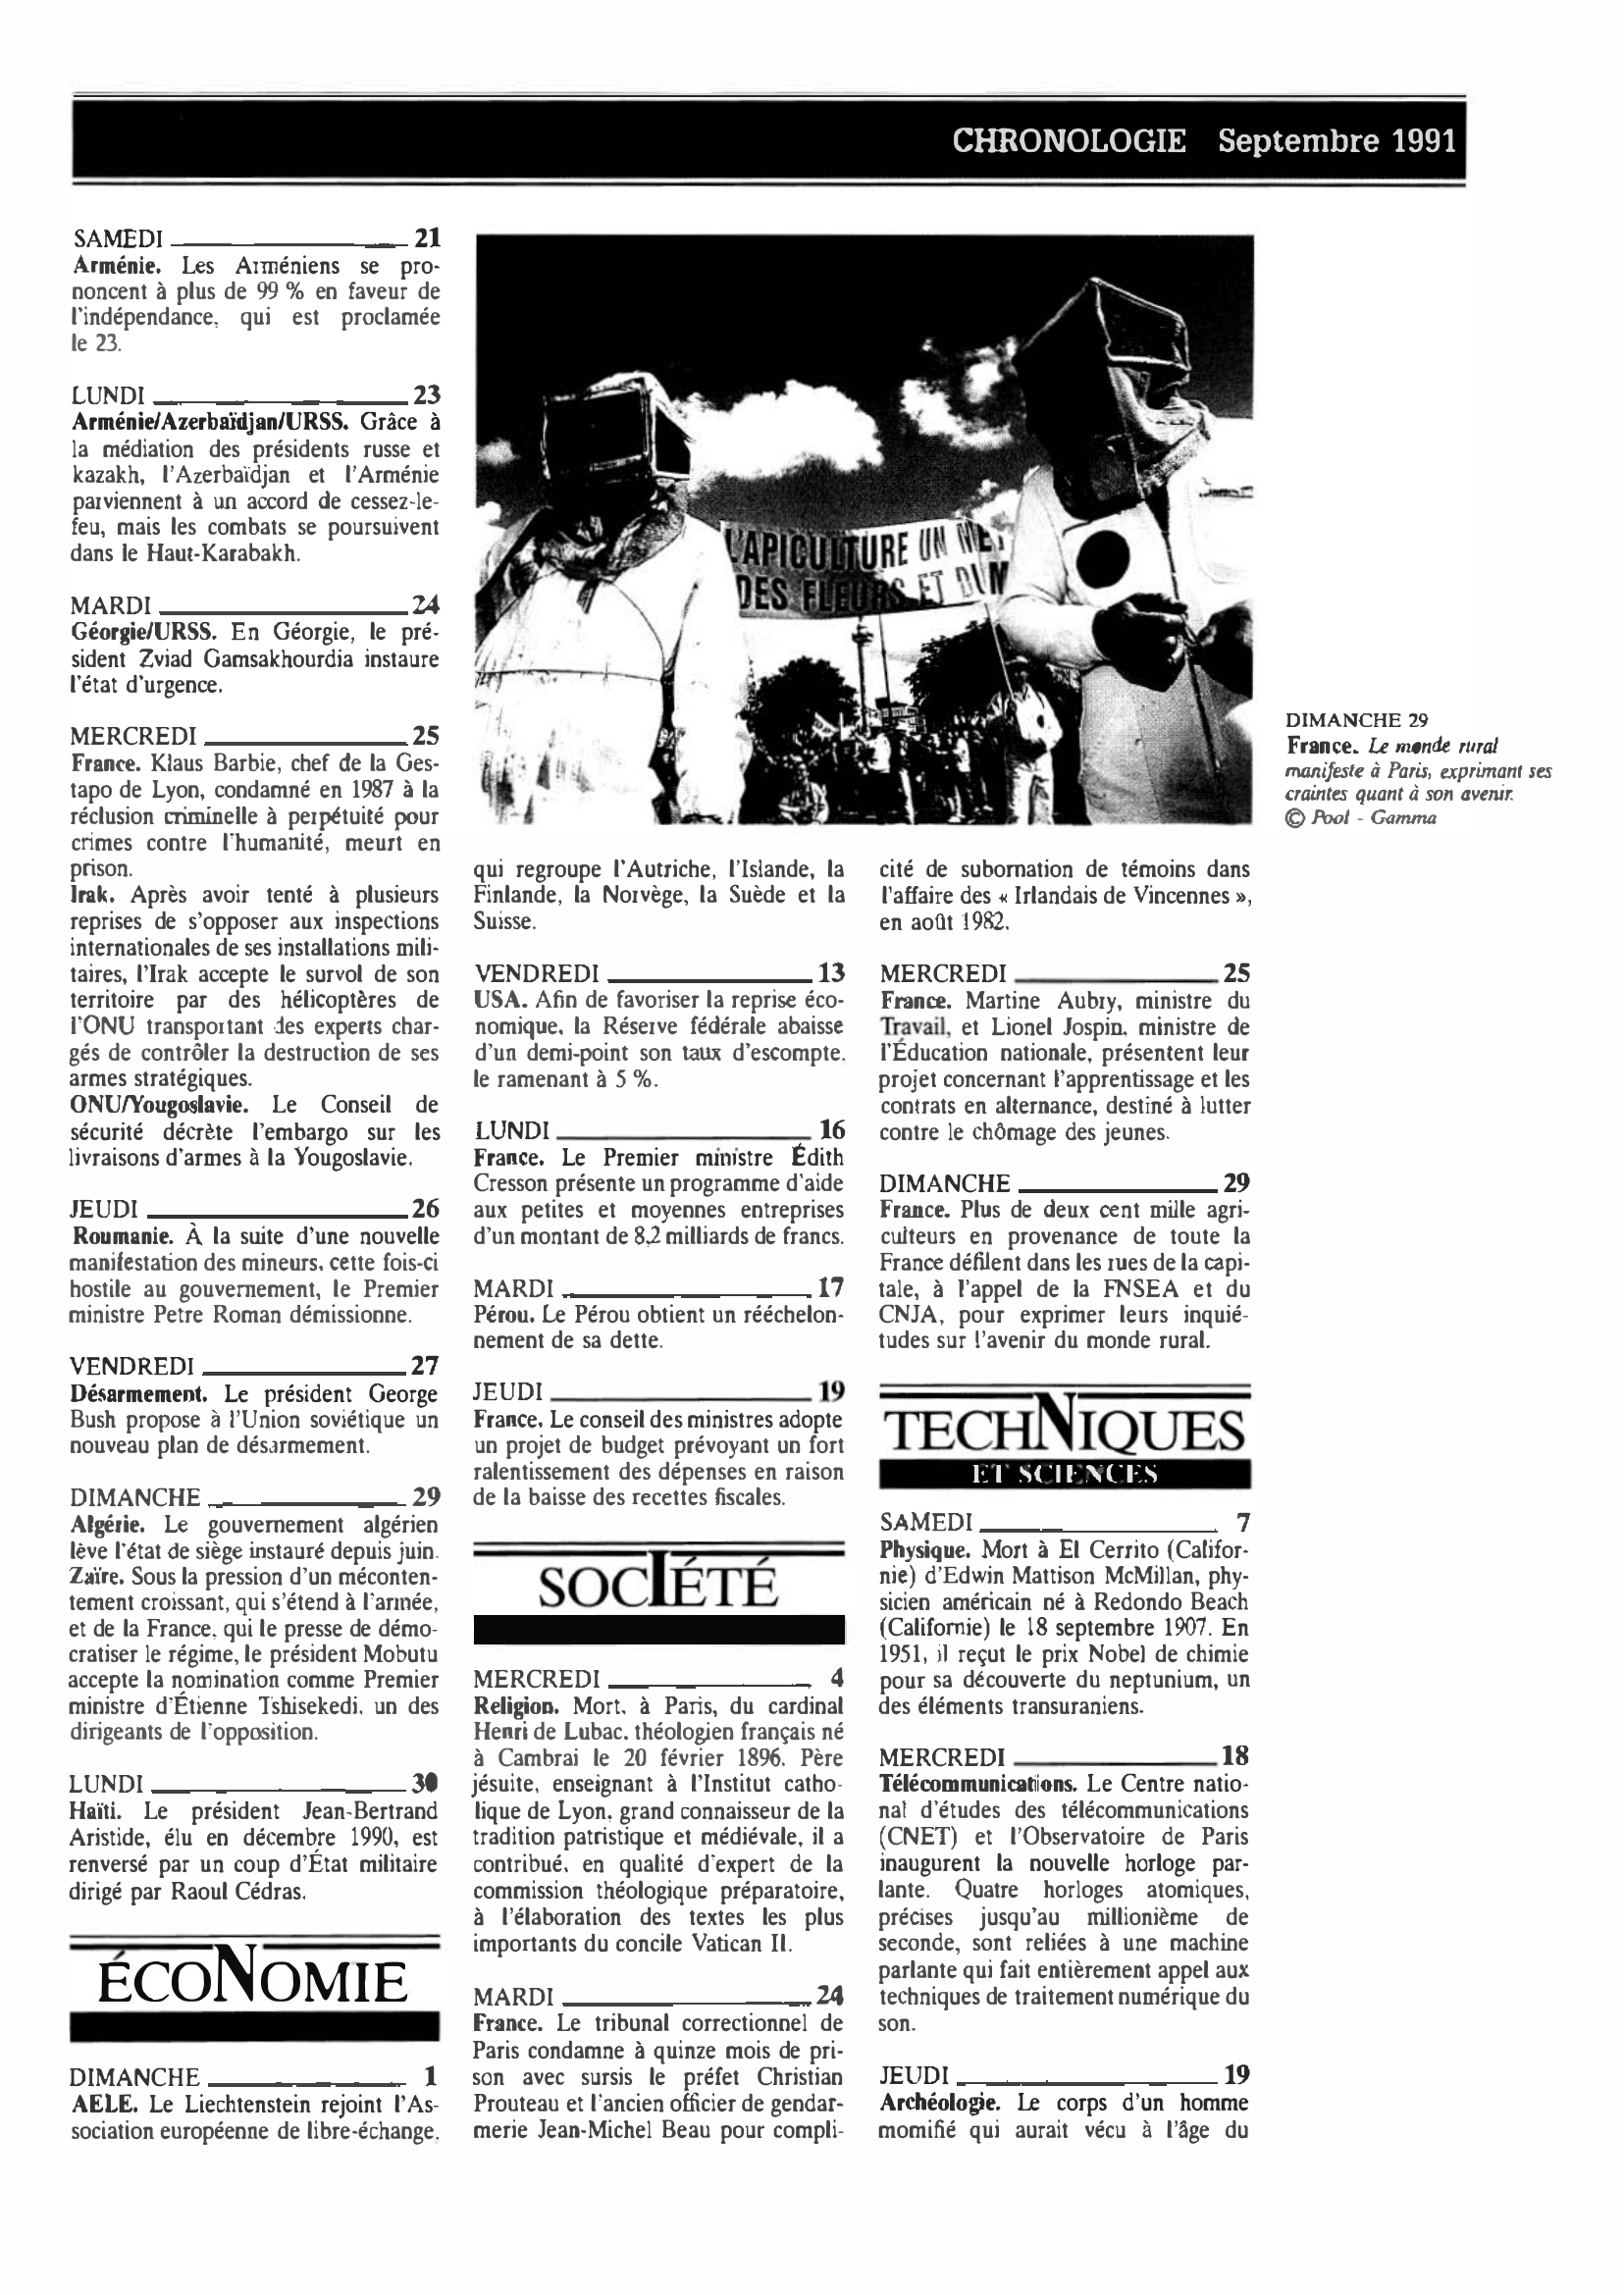 Prévisualisation du document CHRONOLOGIE Septembre 1991 dans le monde (histoire chronologique)